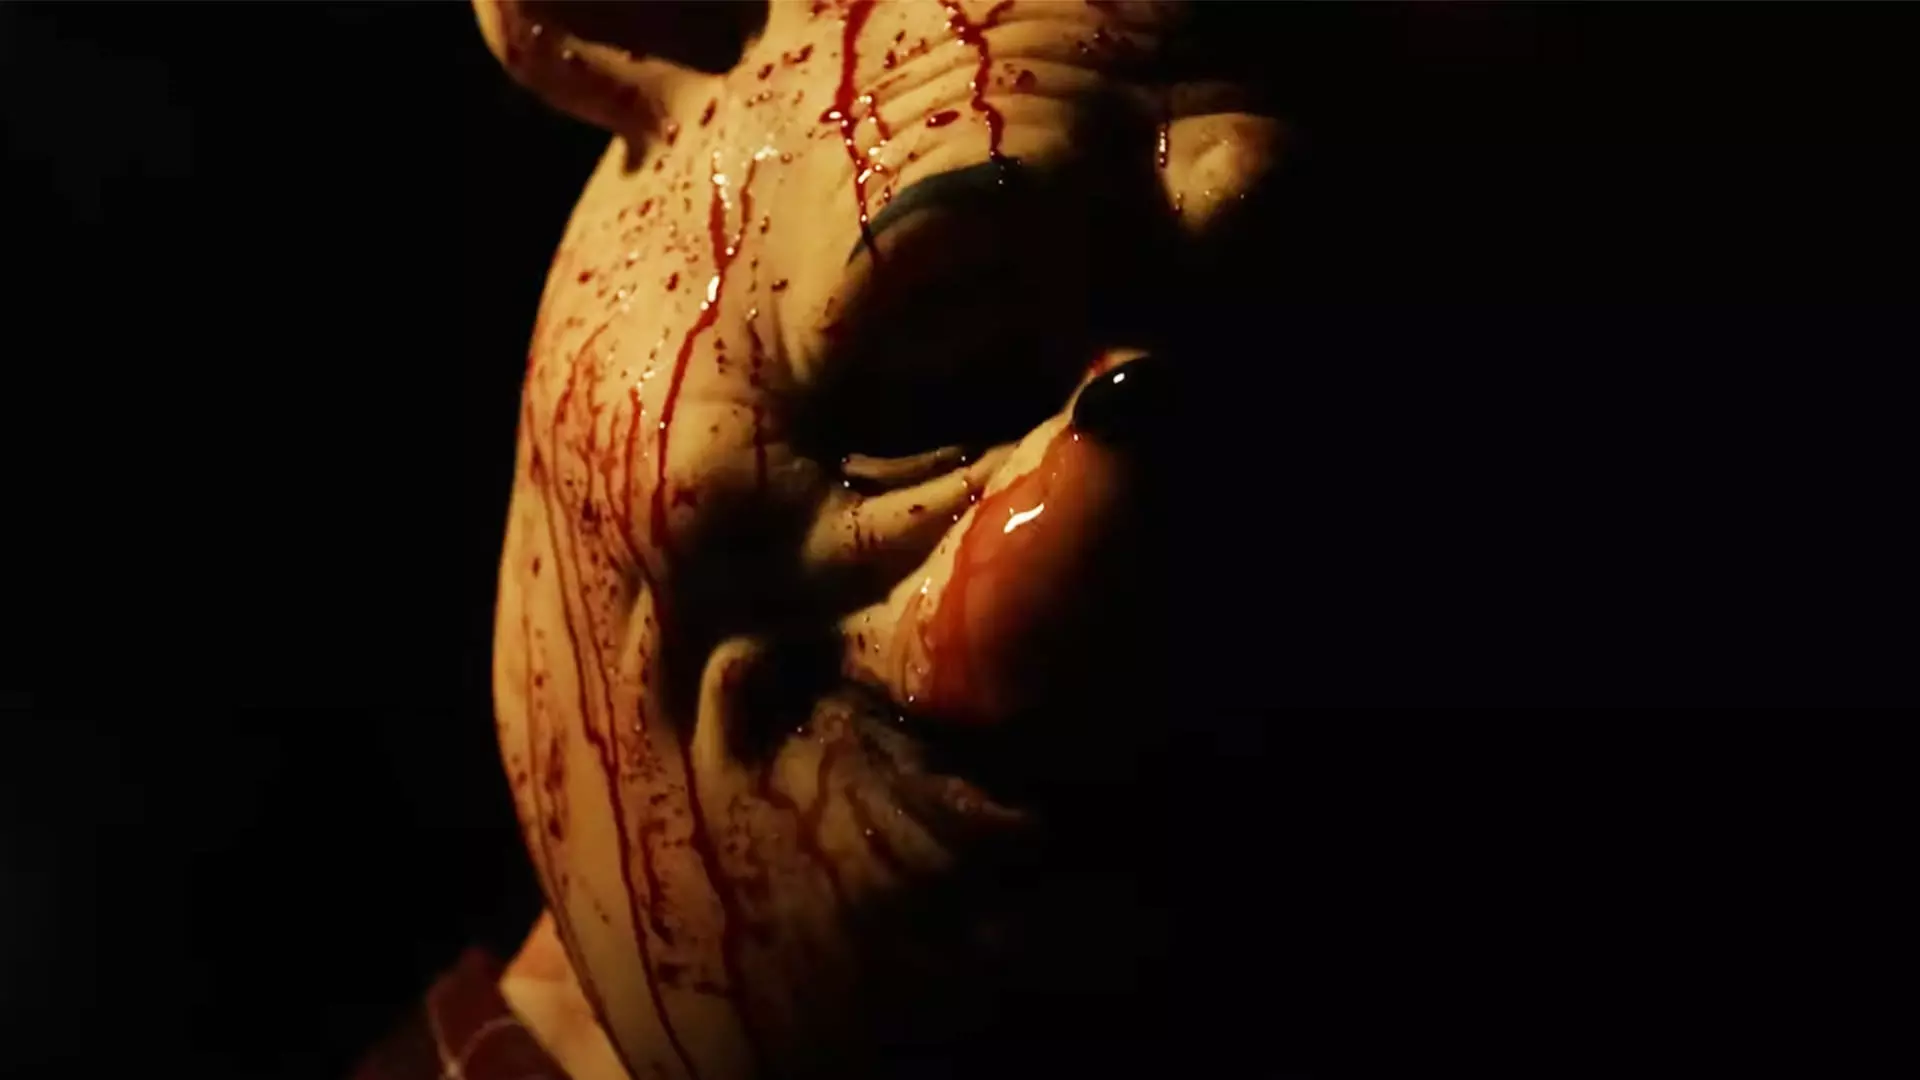 وینی پو در فیلم وینی پو: خون و عسل غرق در خون شد